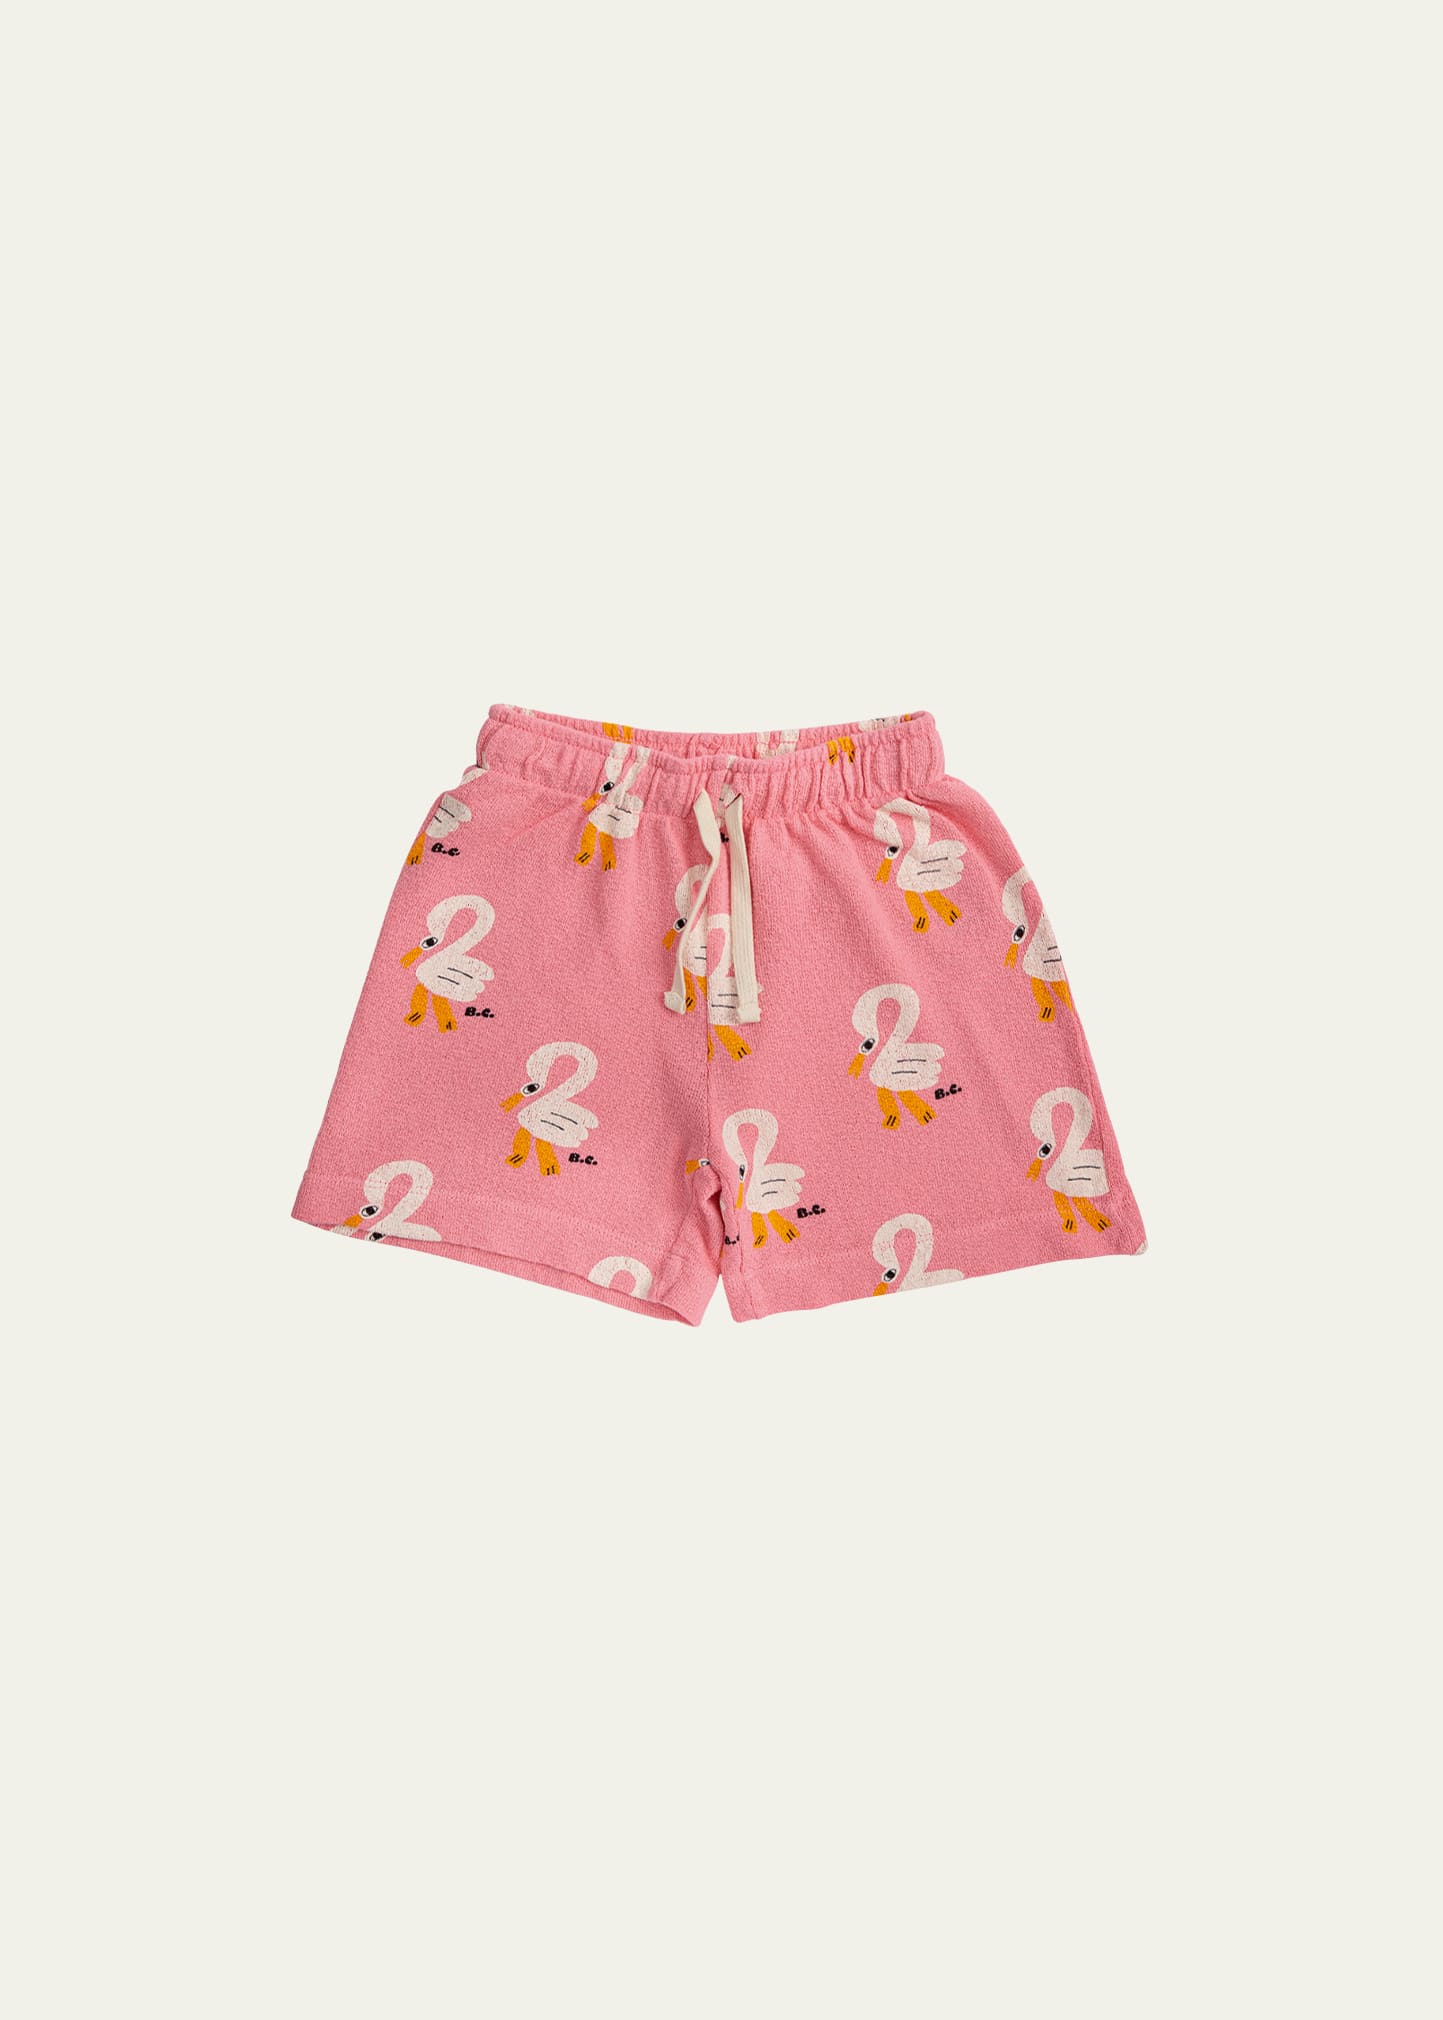 Bobo Choses Girl's Pelican Cotton Bermuda shorts, Size 2-13